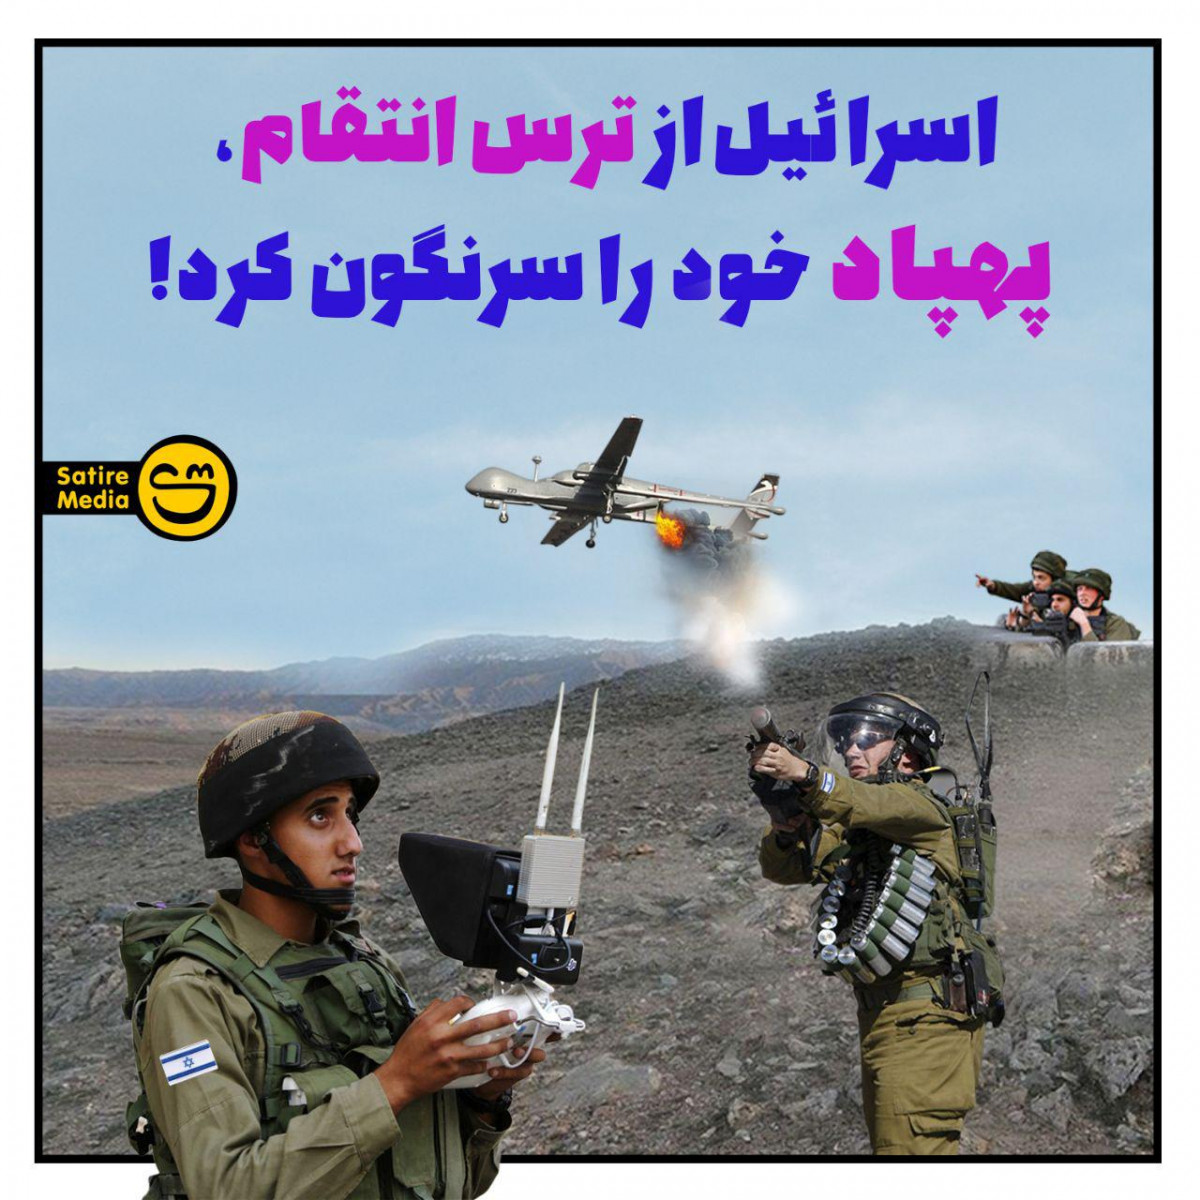 پوستر: اسرائیل از ترس انتقام، پهپاد خود را سرنگون کرد